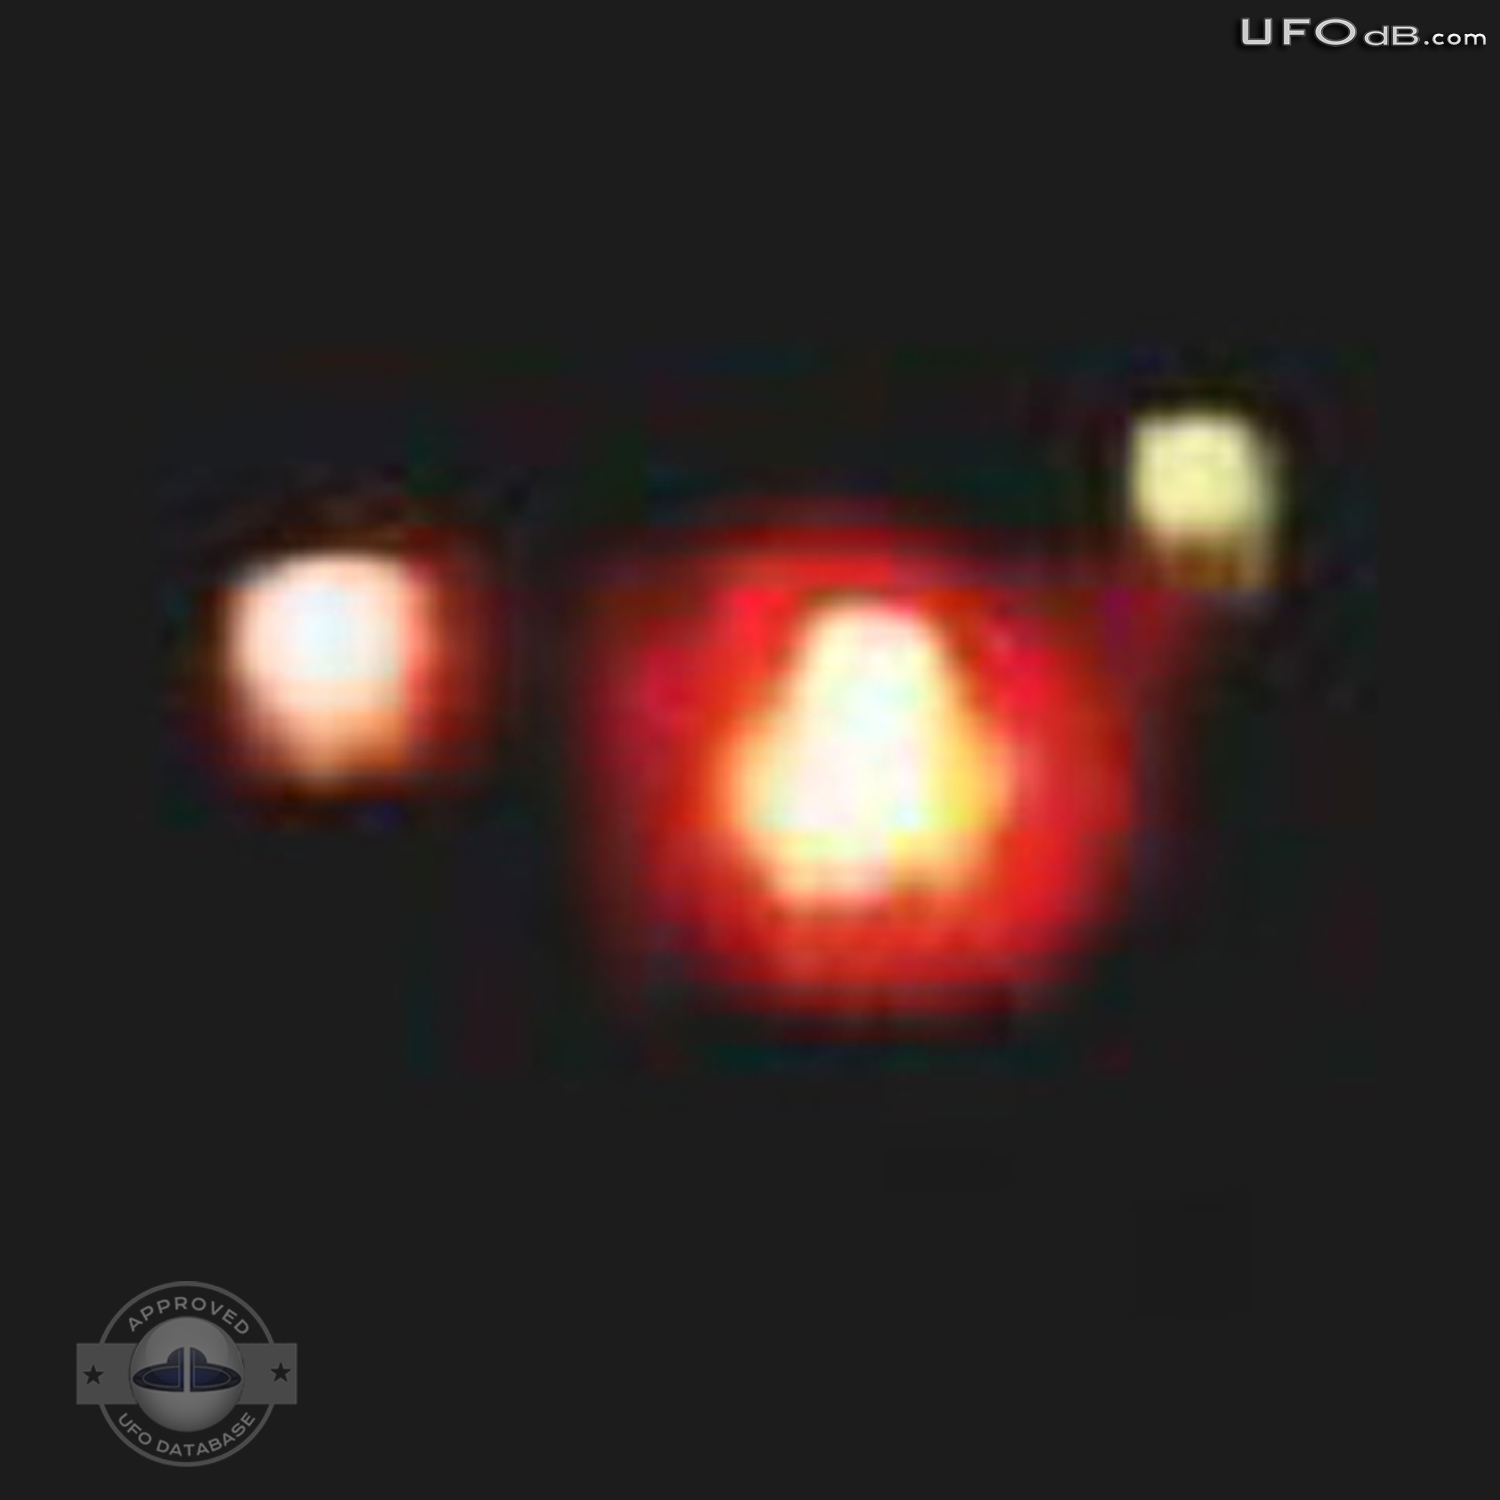 Ituzaingo Triangular UFO made Headline News in Argentina May 17 2011 UFO Picture #328-3